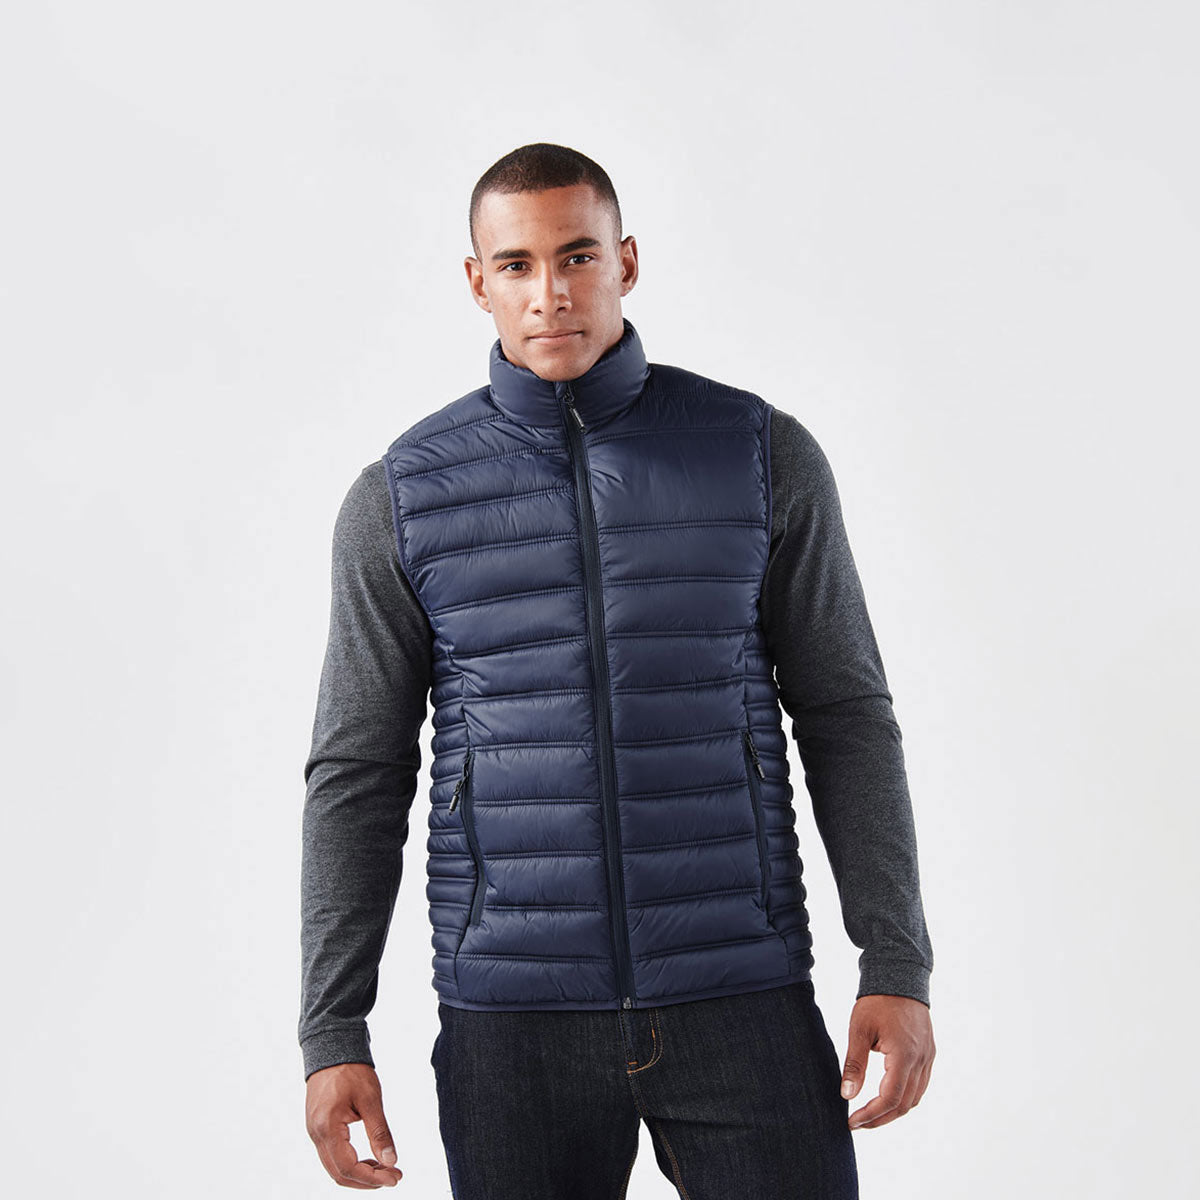 jackets - Vests - Men's Stavanger Thermal Vest - AFV-1